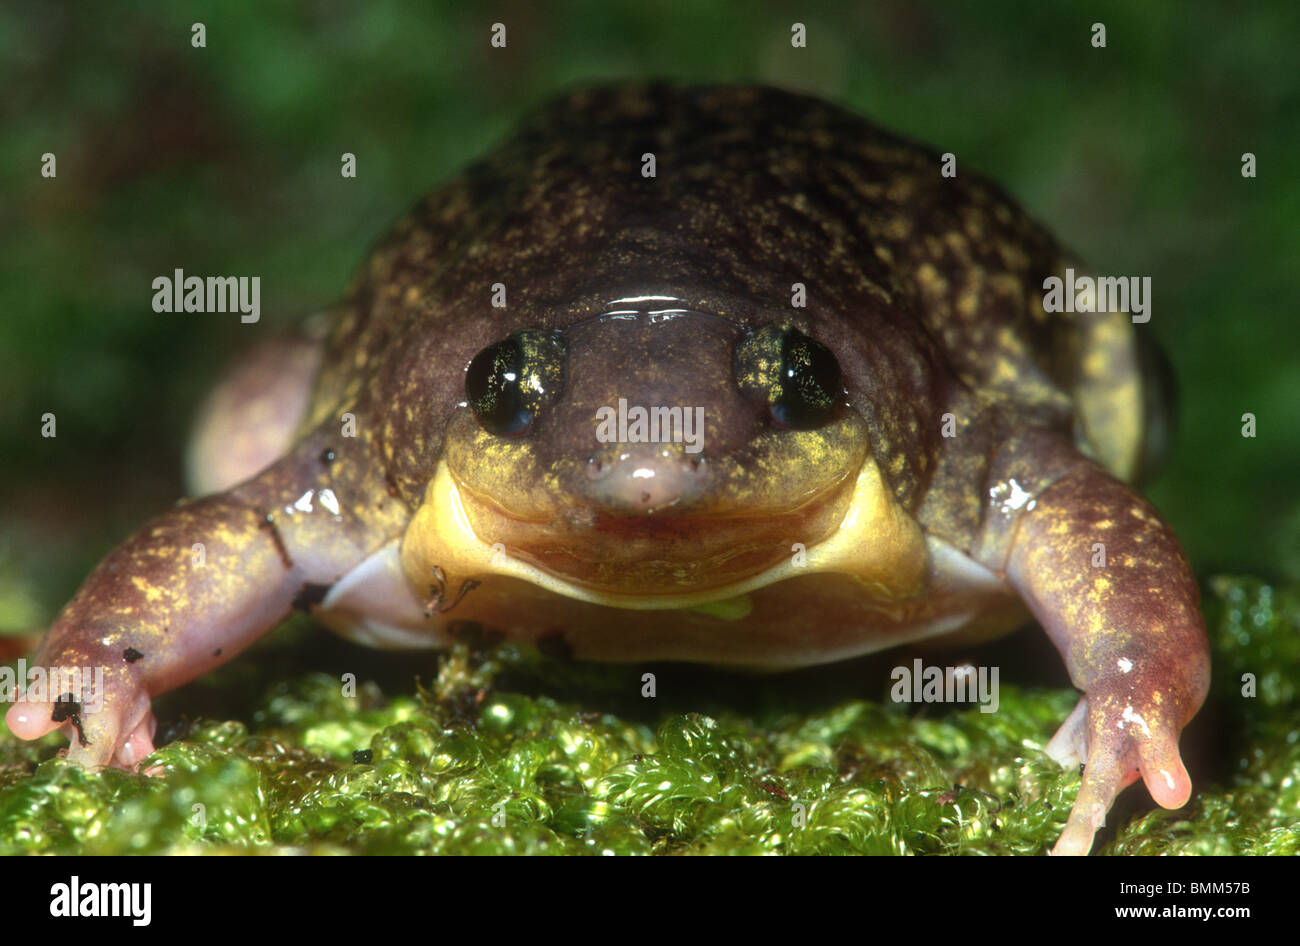 Mottled shovel-nose frog, Hemisus marmoratus, South Africa Stock Photo